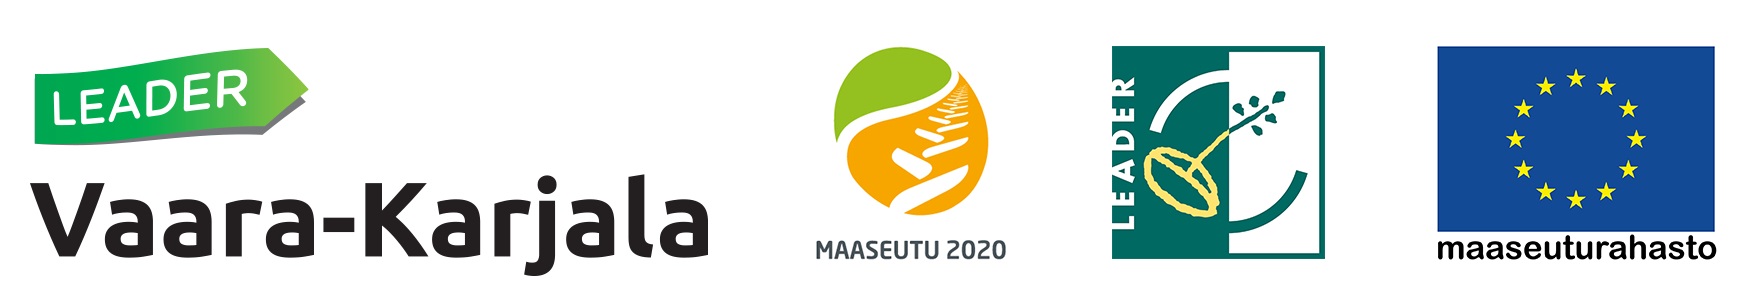 Logot Leader Vaara-Karjala Maaseutu 2020, Maaseuturahasto